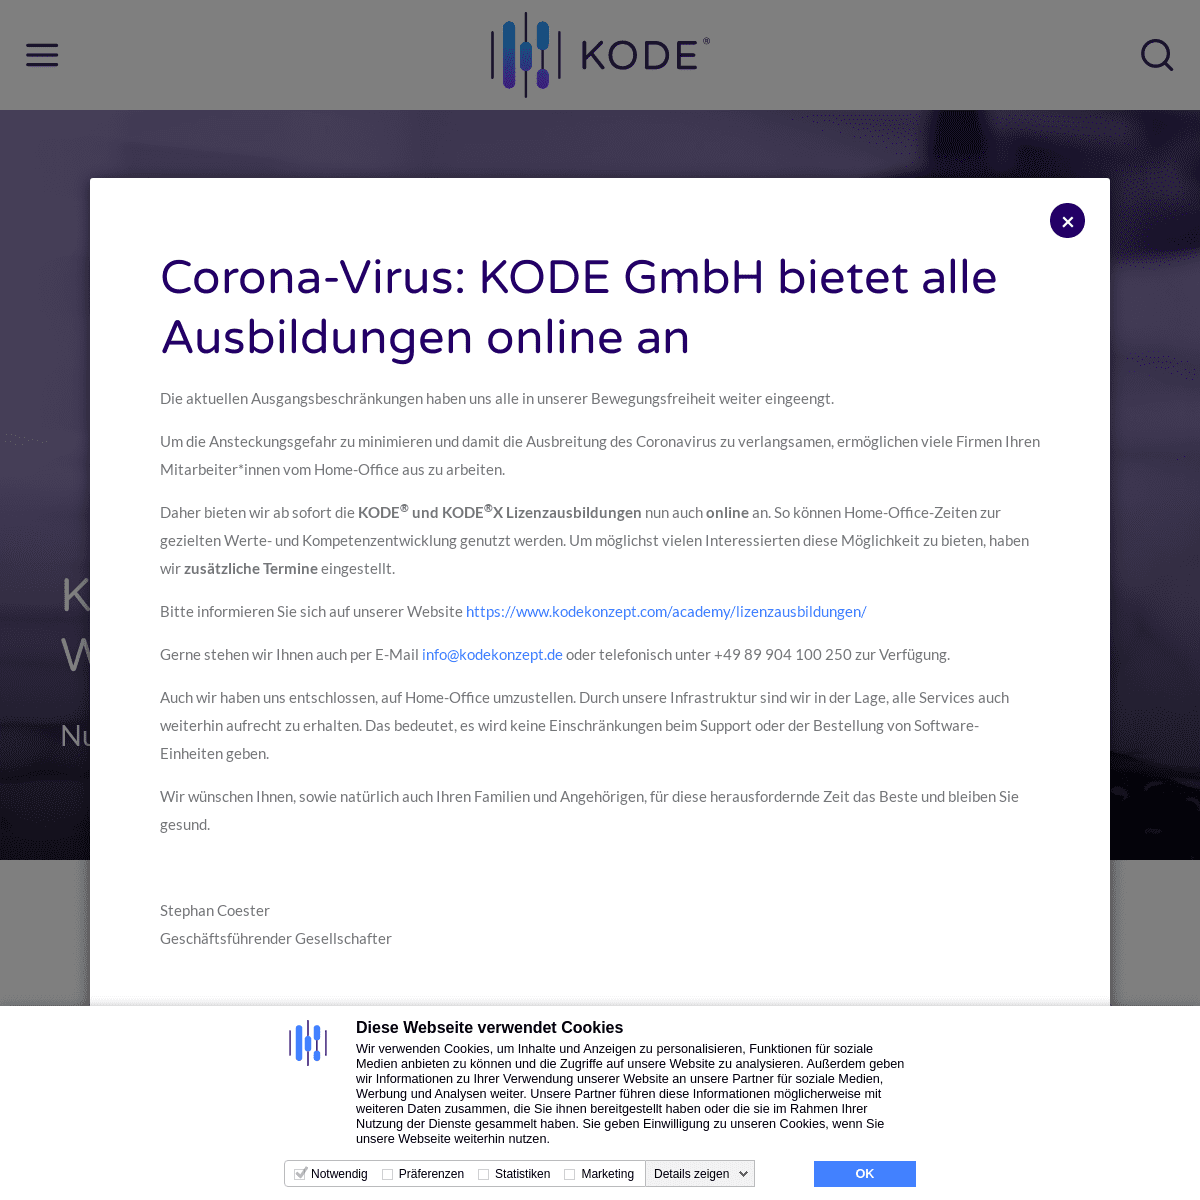 A complete backup of kodekonzept.com